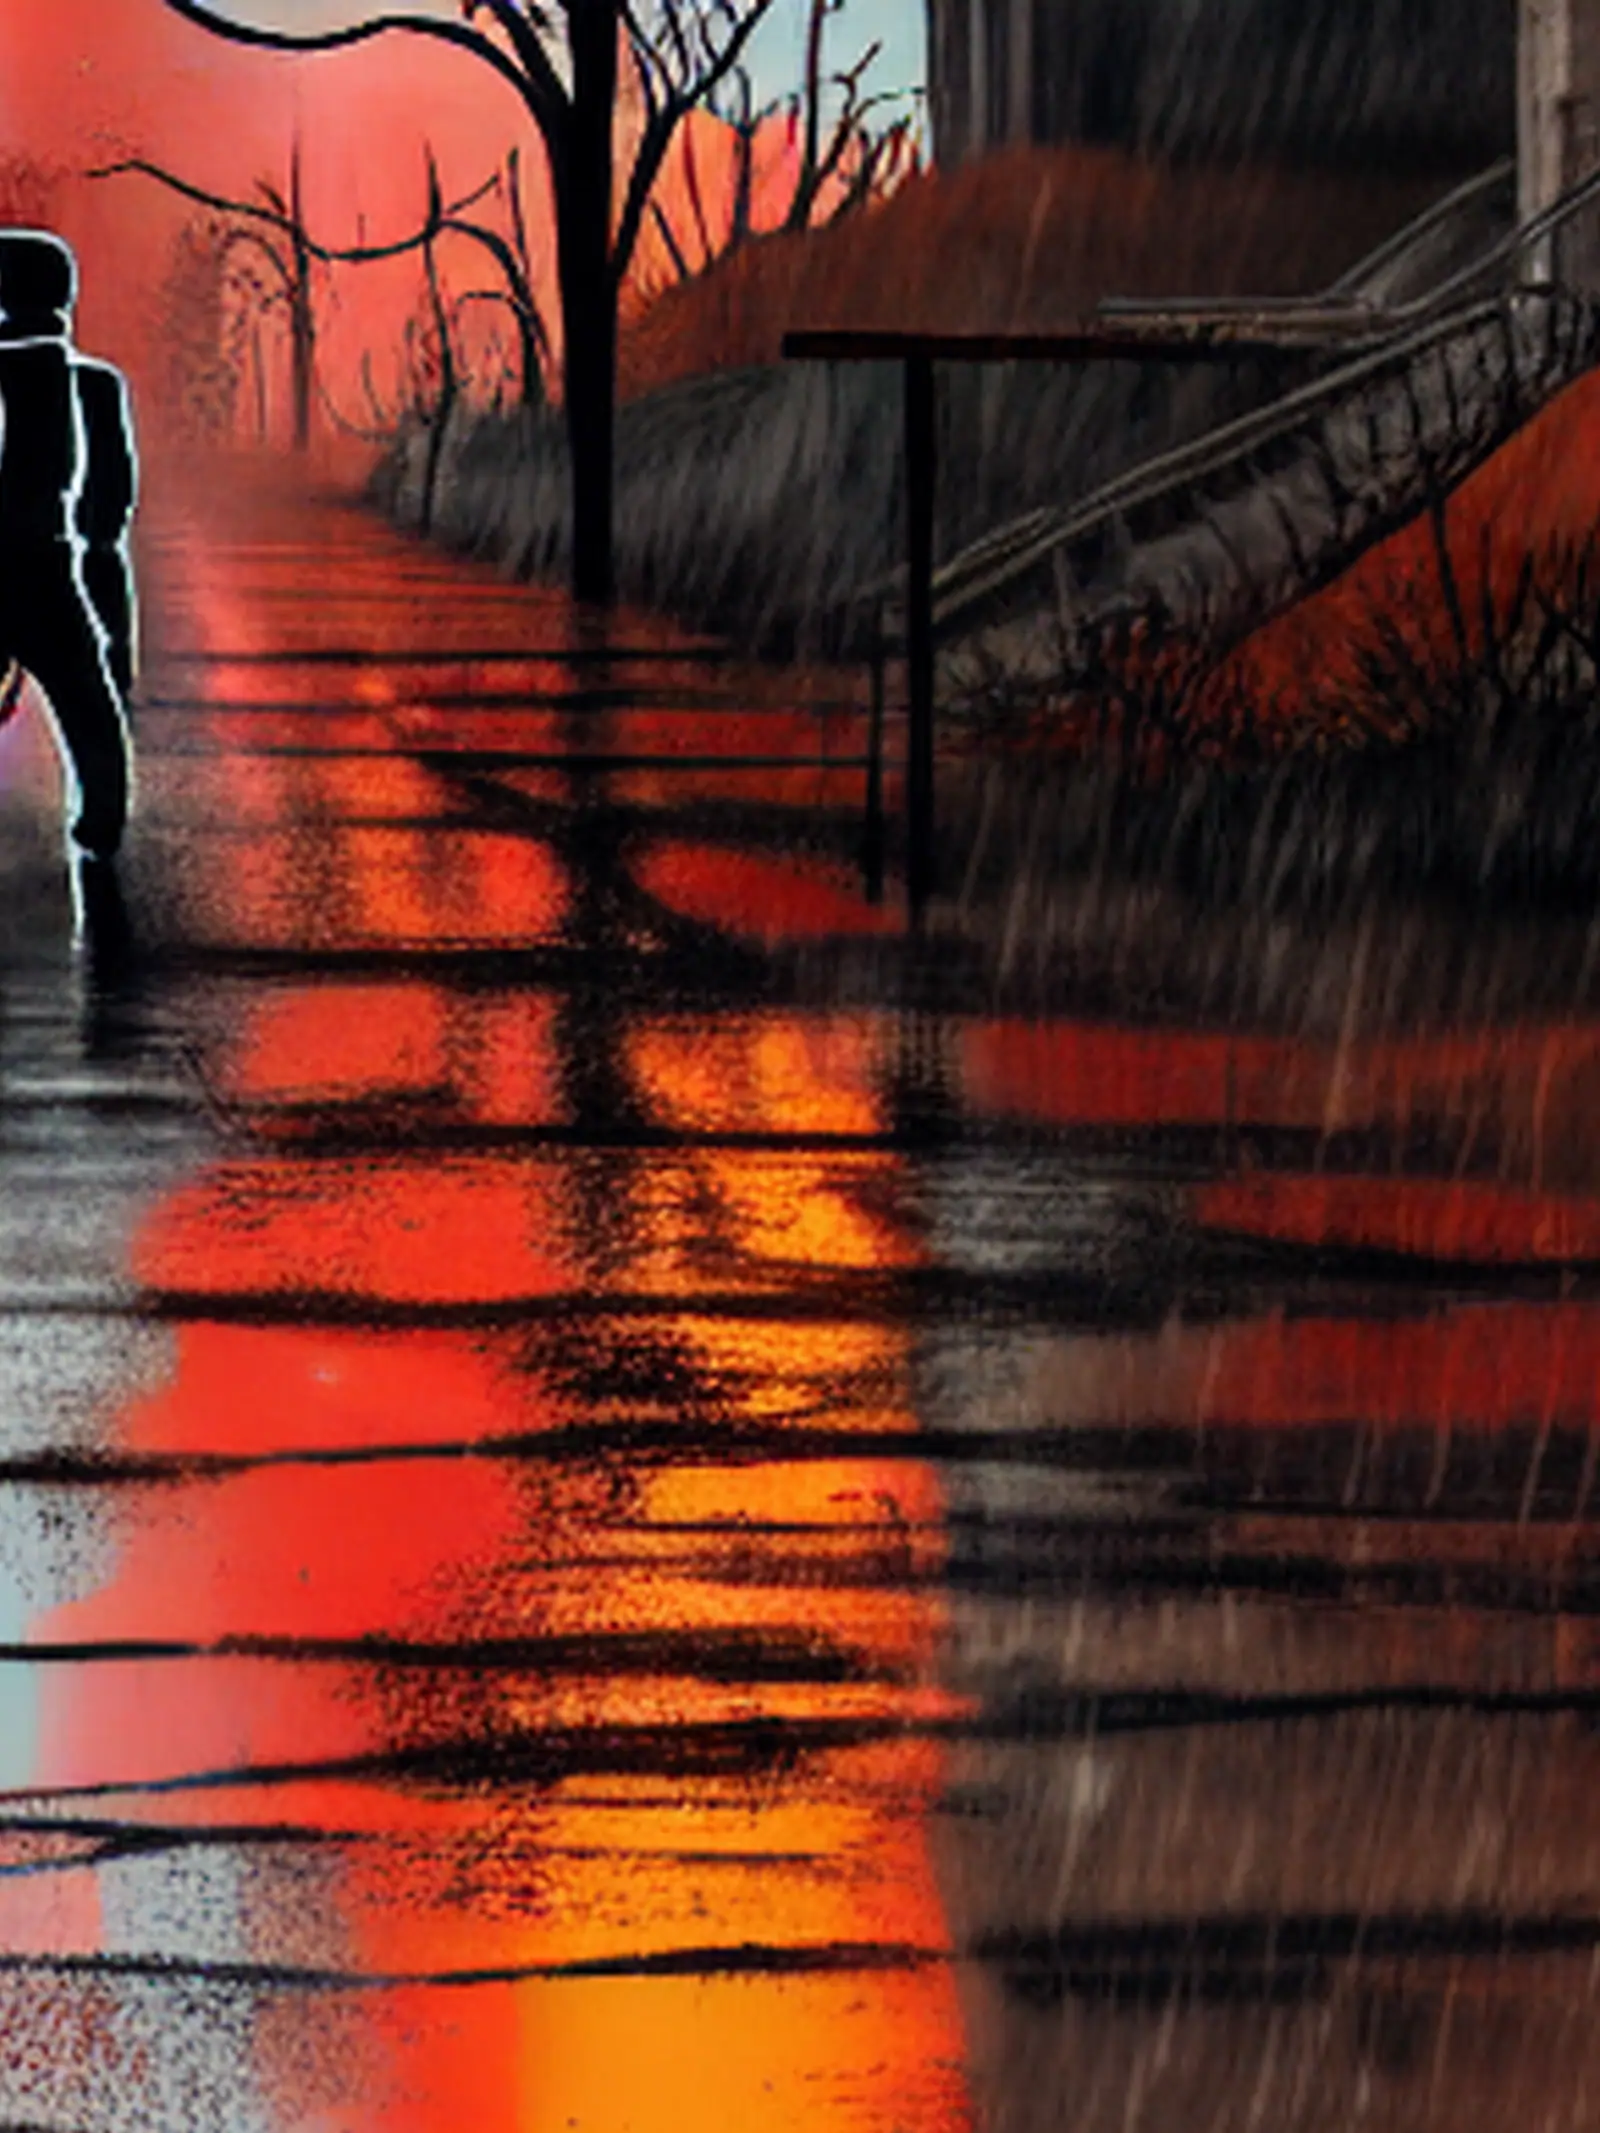 A shadowy figure walking in the rain